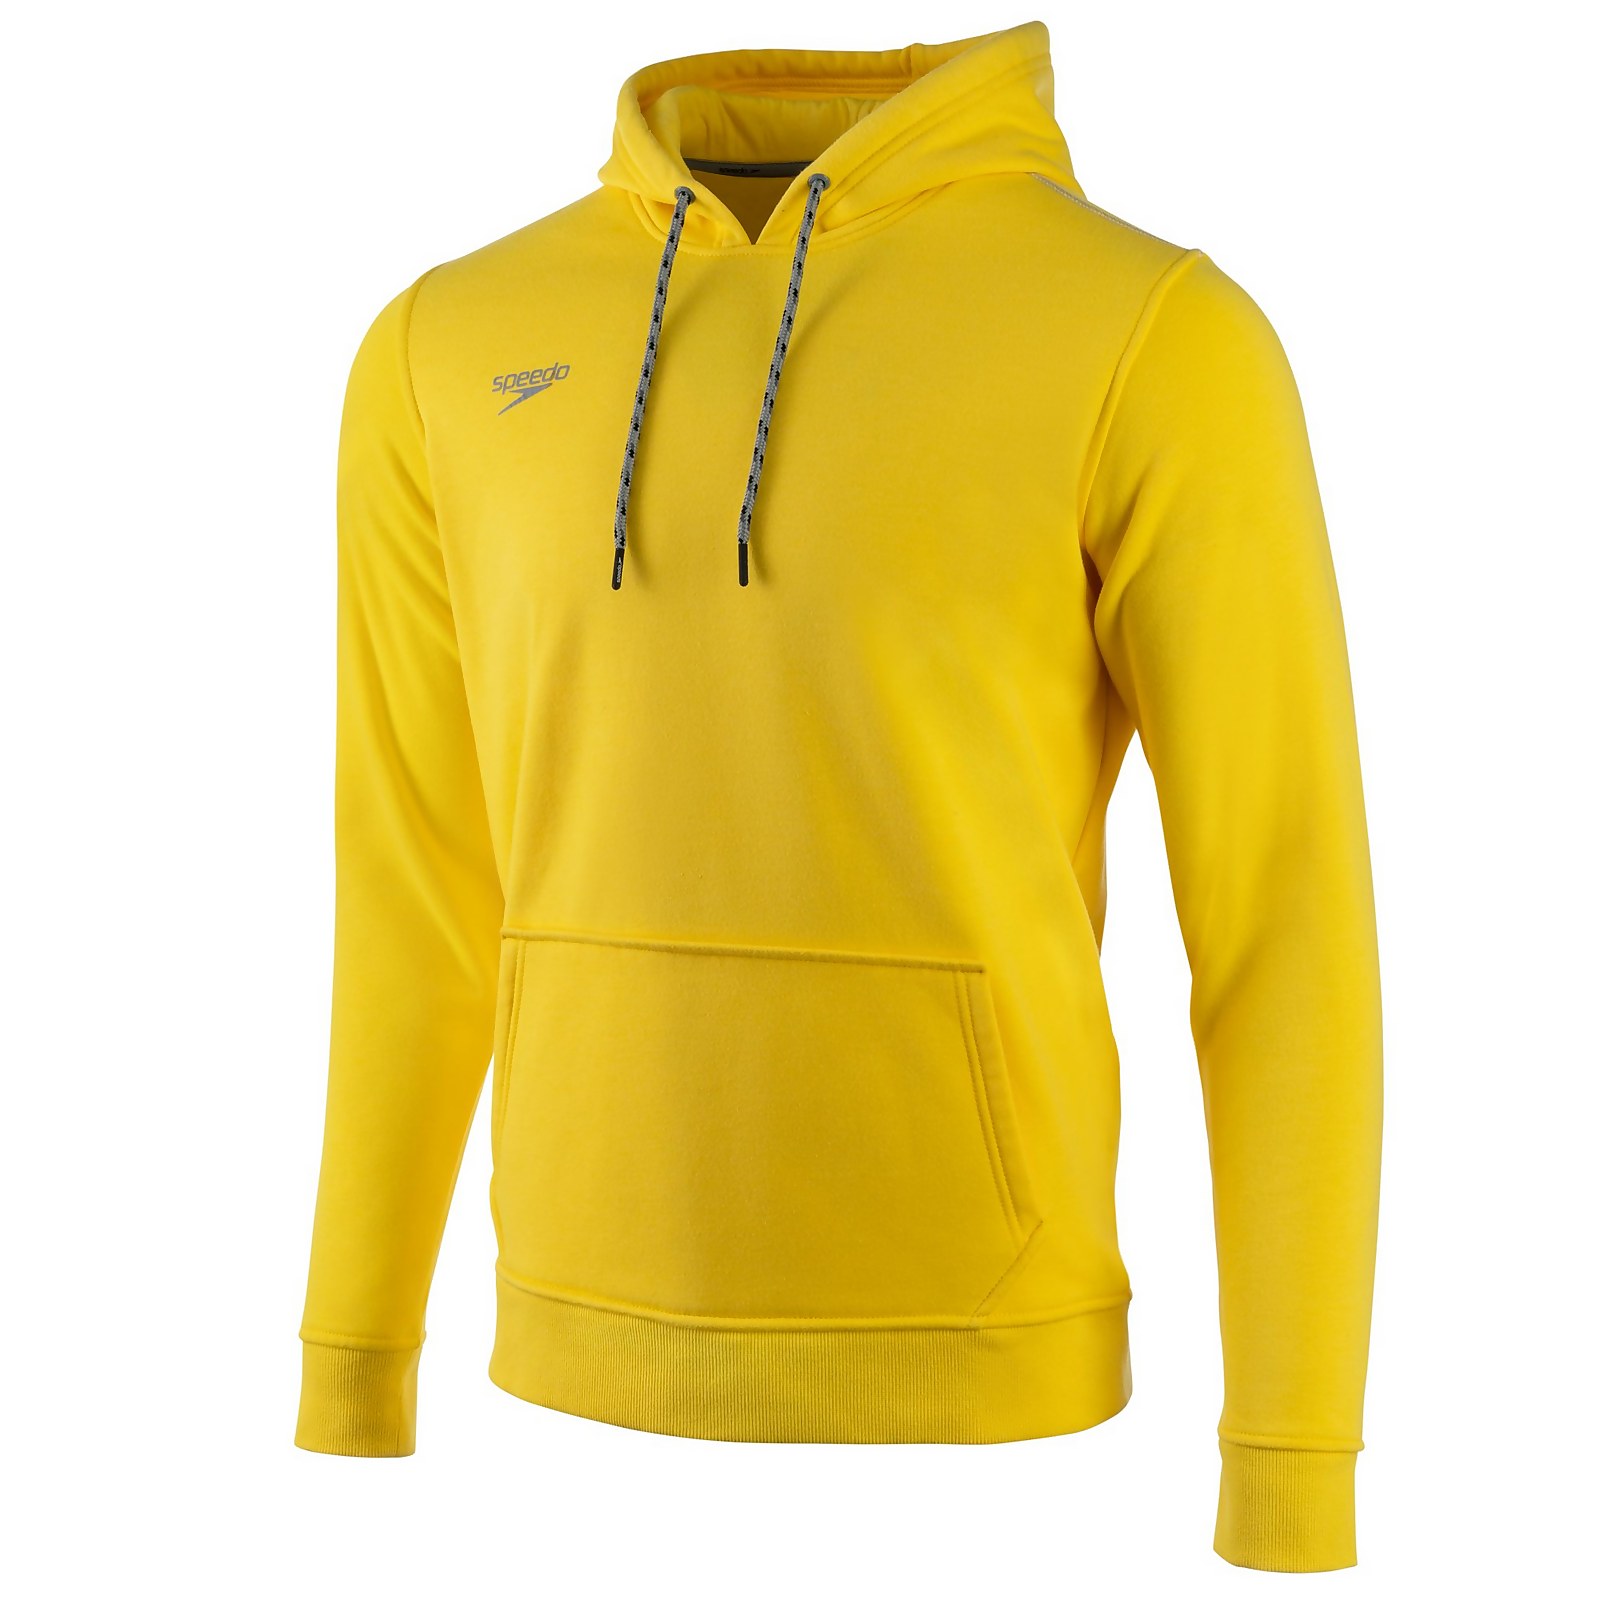 Speedo  Long Sleeve Hooded Sweatshirt - L    : Yellow